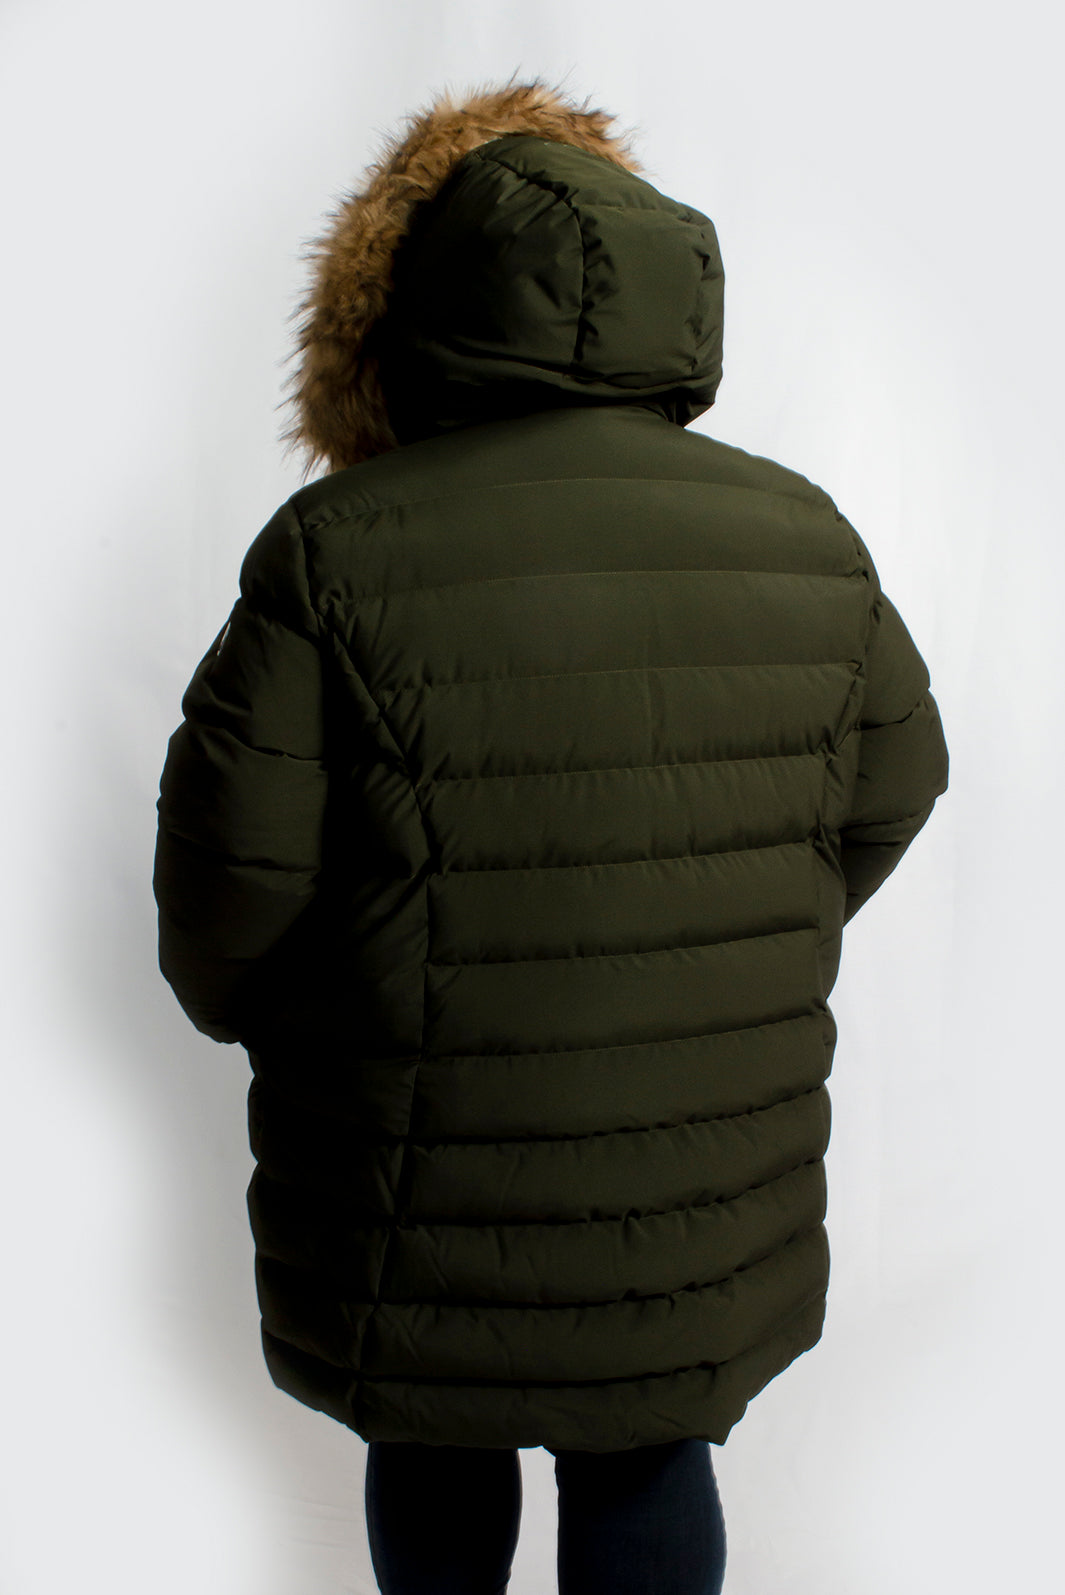 Women's winter jacket plus size COLLEGIATE - 44710O - Alizée